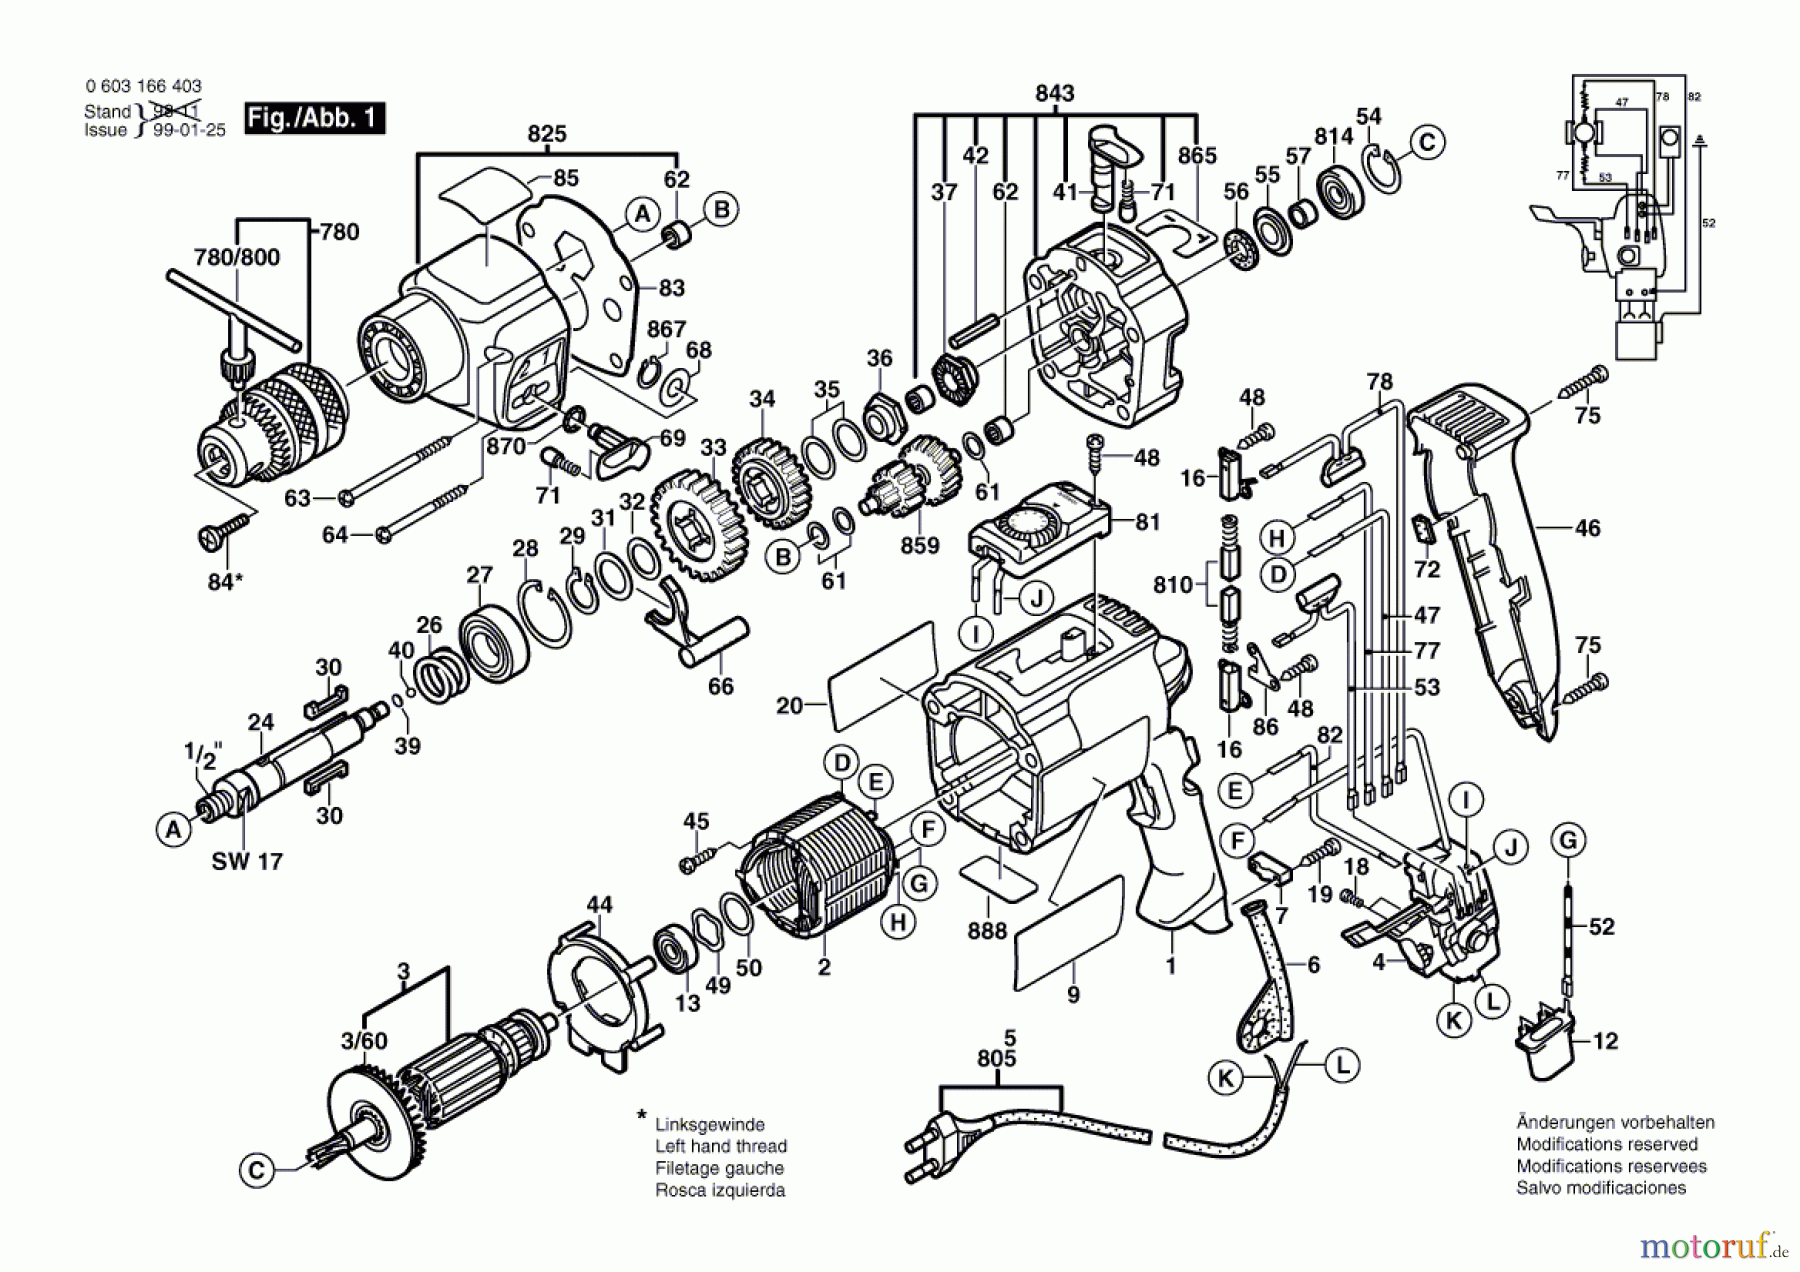  Bosch Werkzeug Schlagbohrmaschine CSB 850-2 RET Seite 1